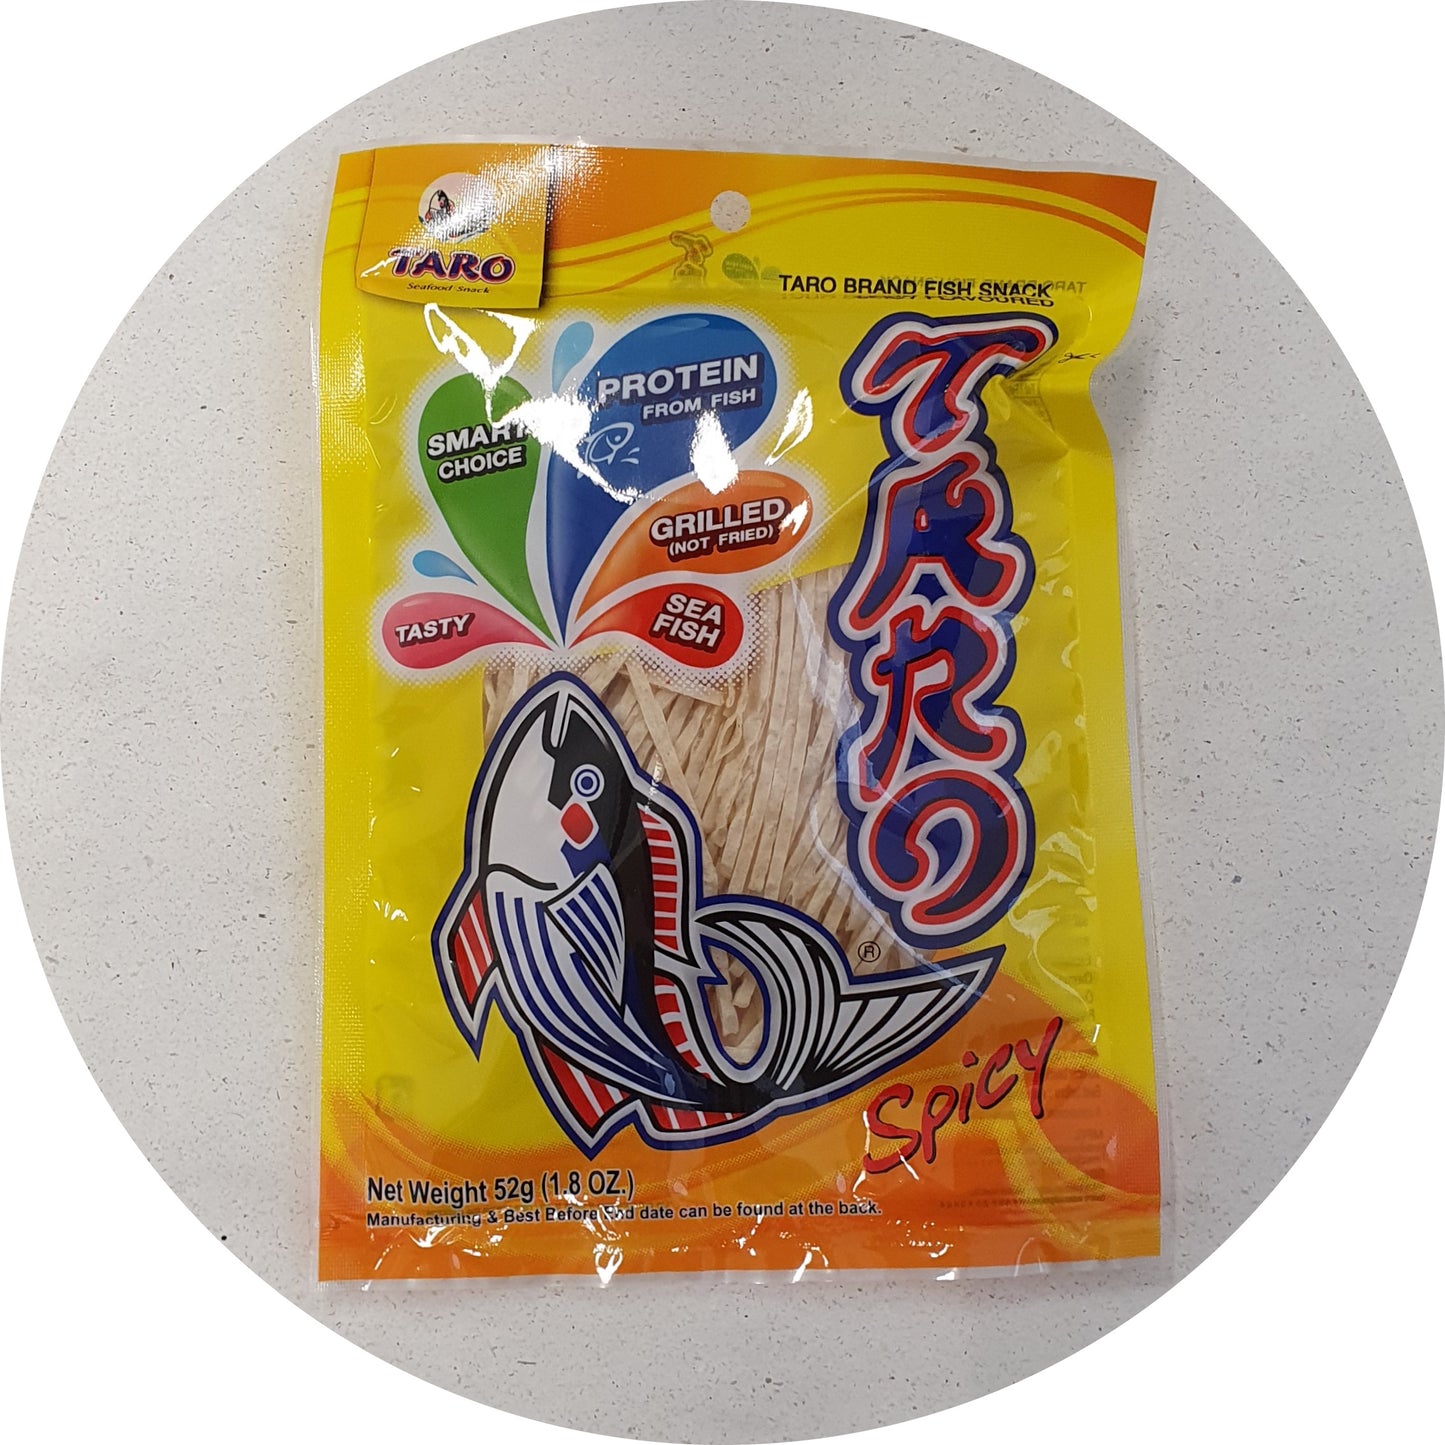 Taro Fish Snack Spicy 52g - Worldster Markt e.K.